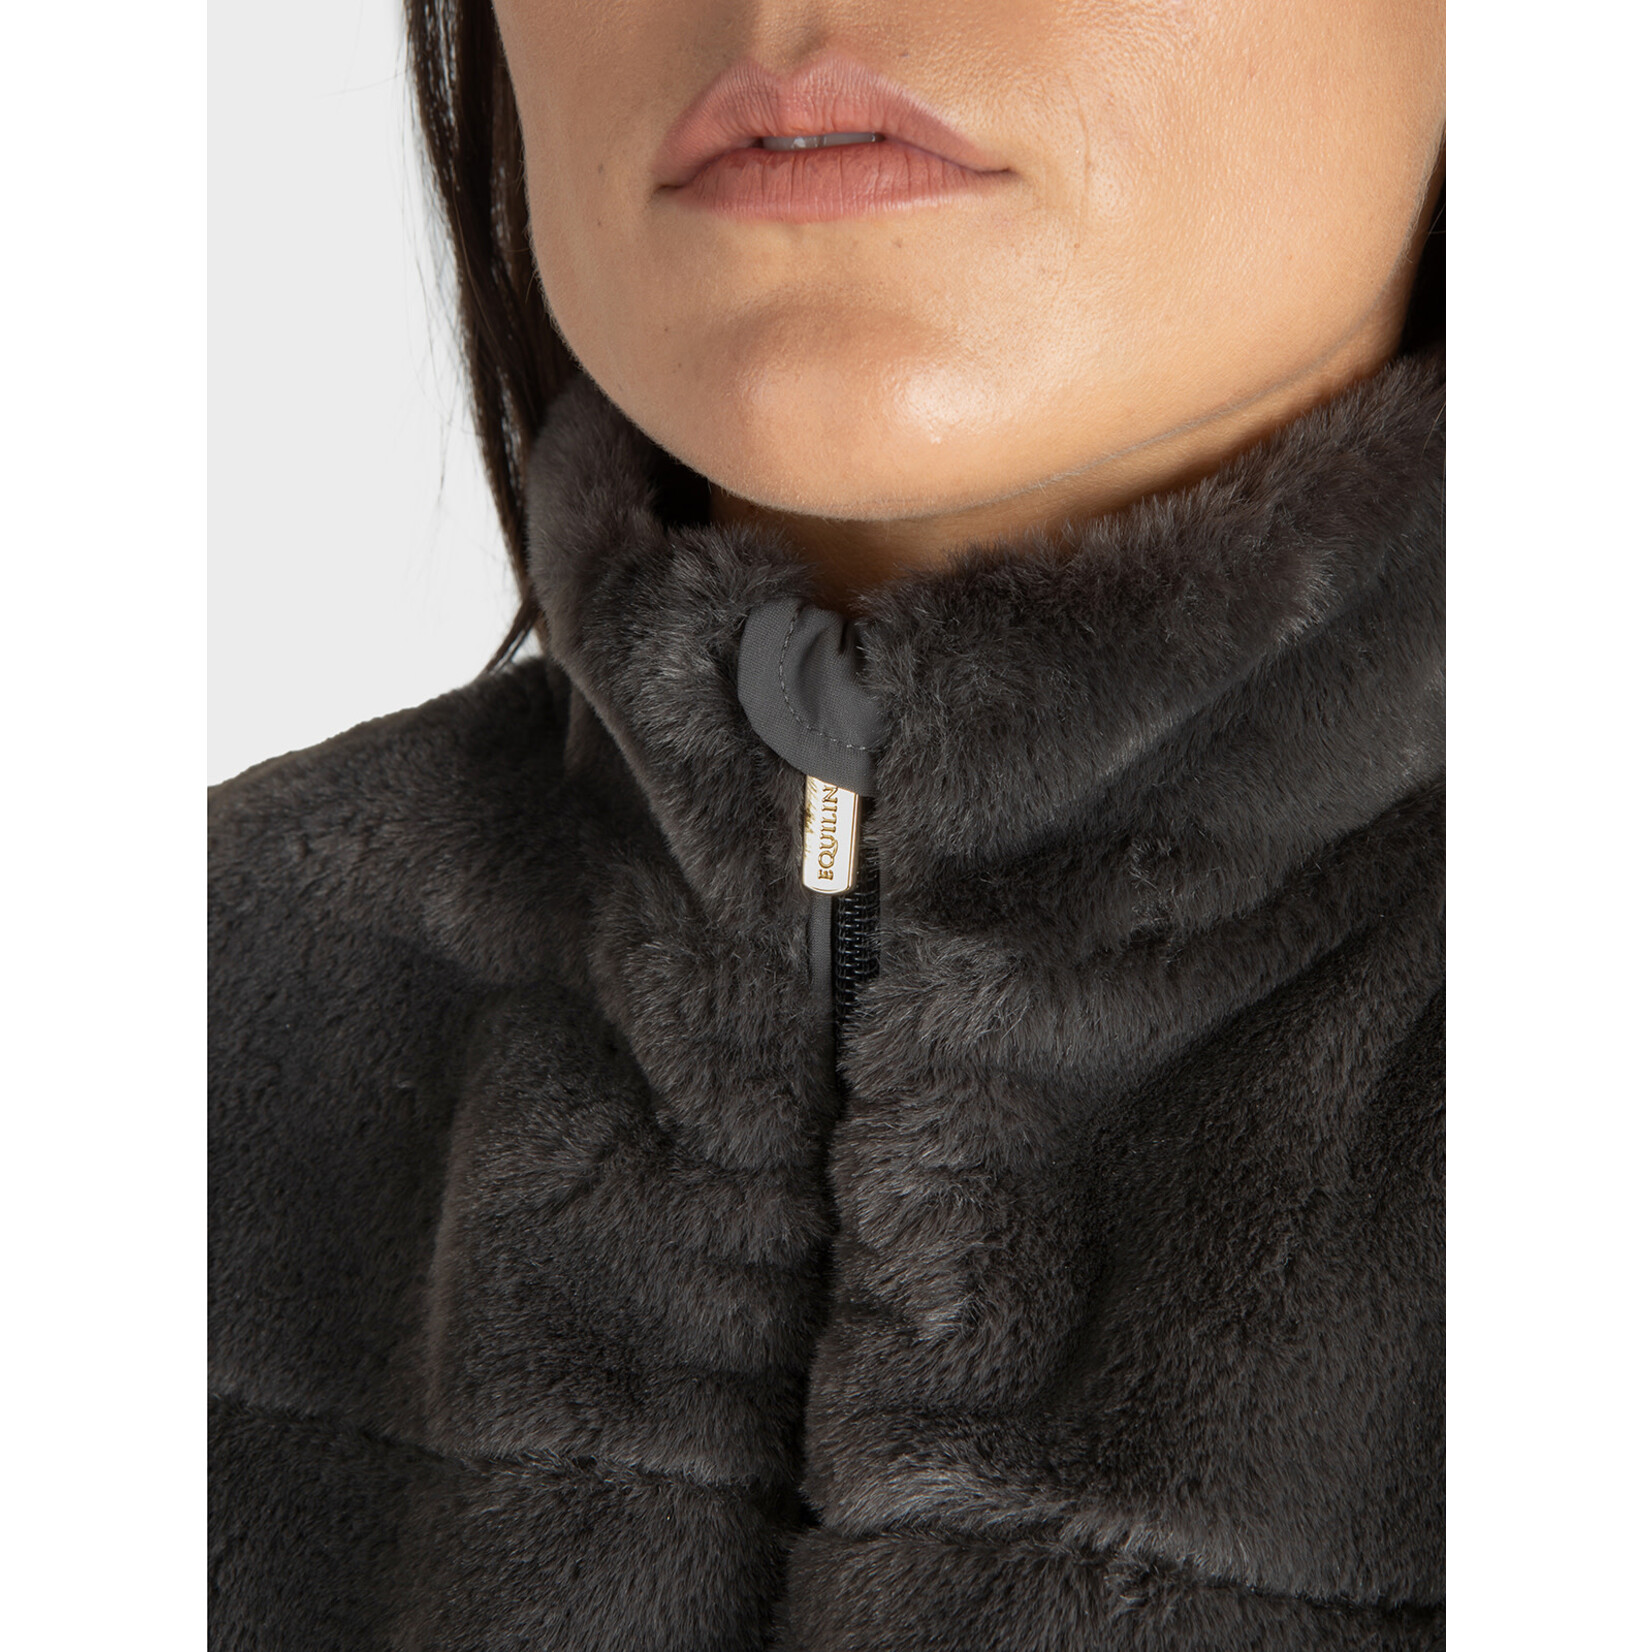 Equiline R09804 Equiline Evilae Women's Eco-Fur Vest